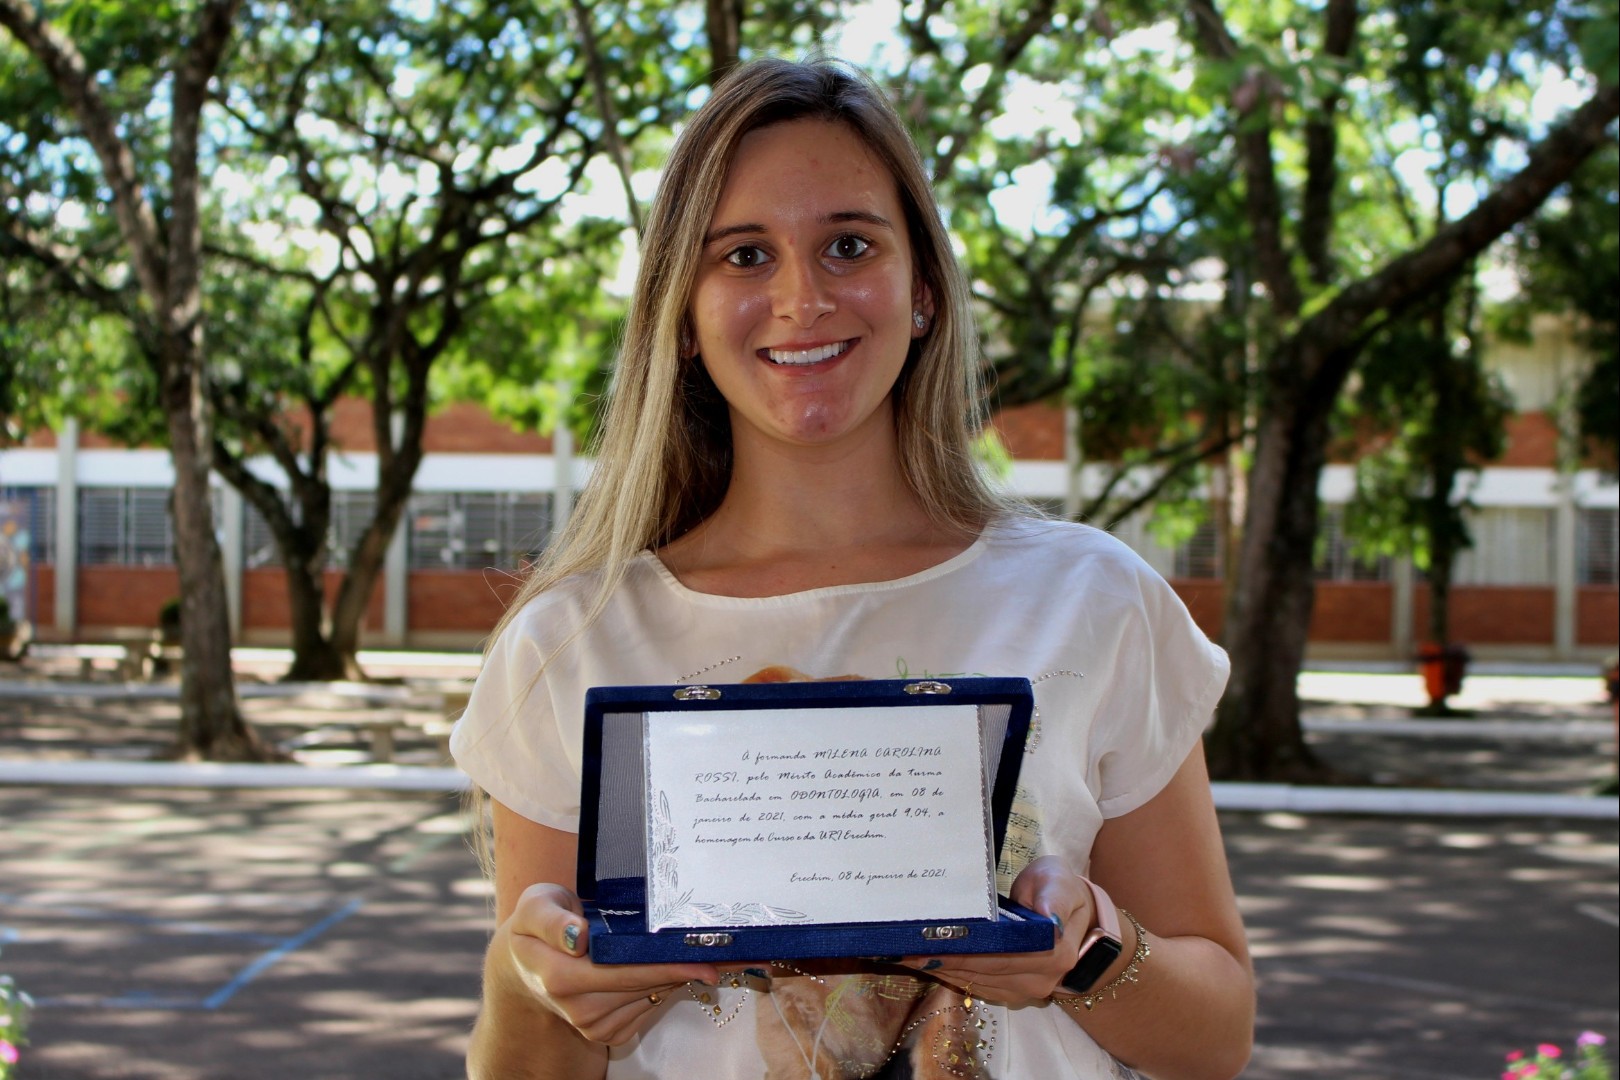 Milena Carolina Rossi, do Curso de Odontologia, com a mdia geral 9,04, colou grau no dia 08 de janeiro